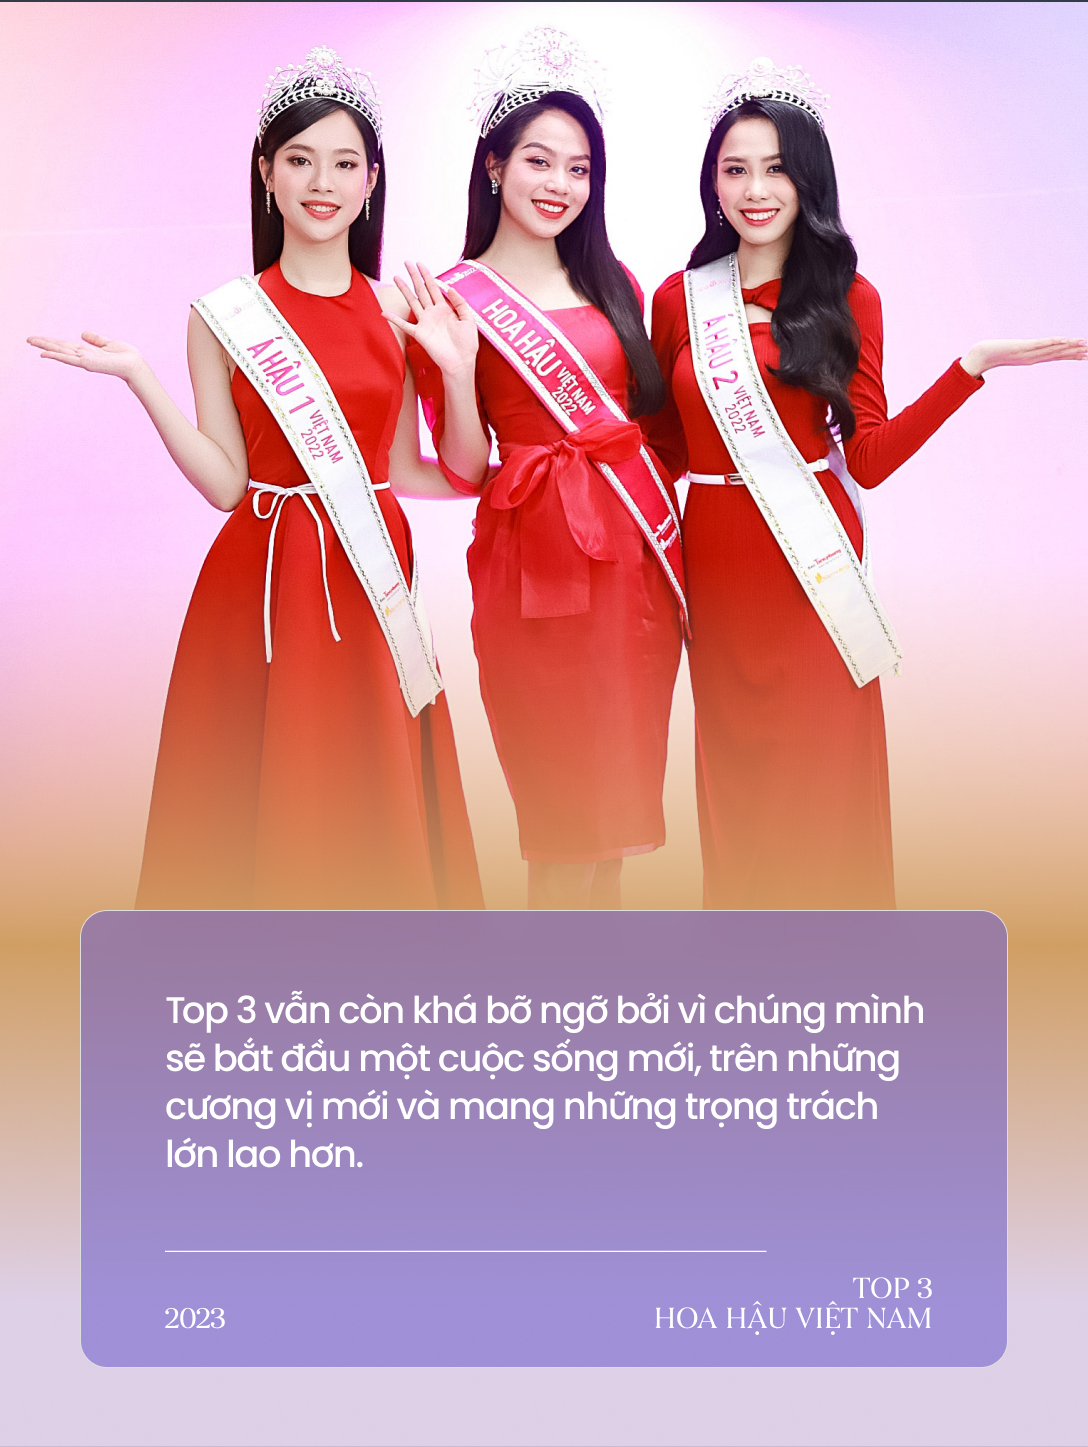 Gặp Top 3 Hoa hậu Việt Nam ngày cận Tết: Hoa hậu không chỉ cần mỗi nhan sắc; Không ai có quyền can thiệp quyết định tiến vào showbiz - Ảnh 2.